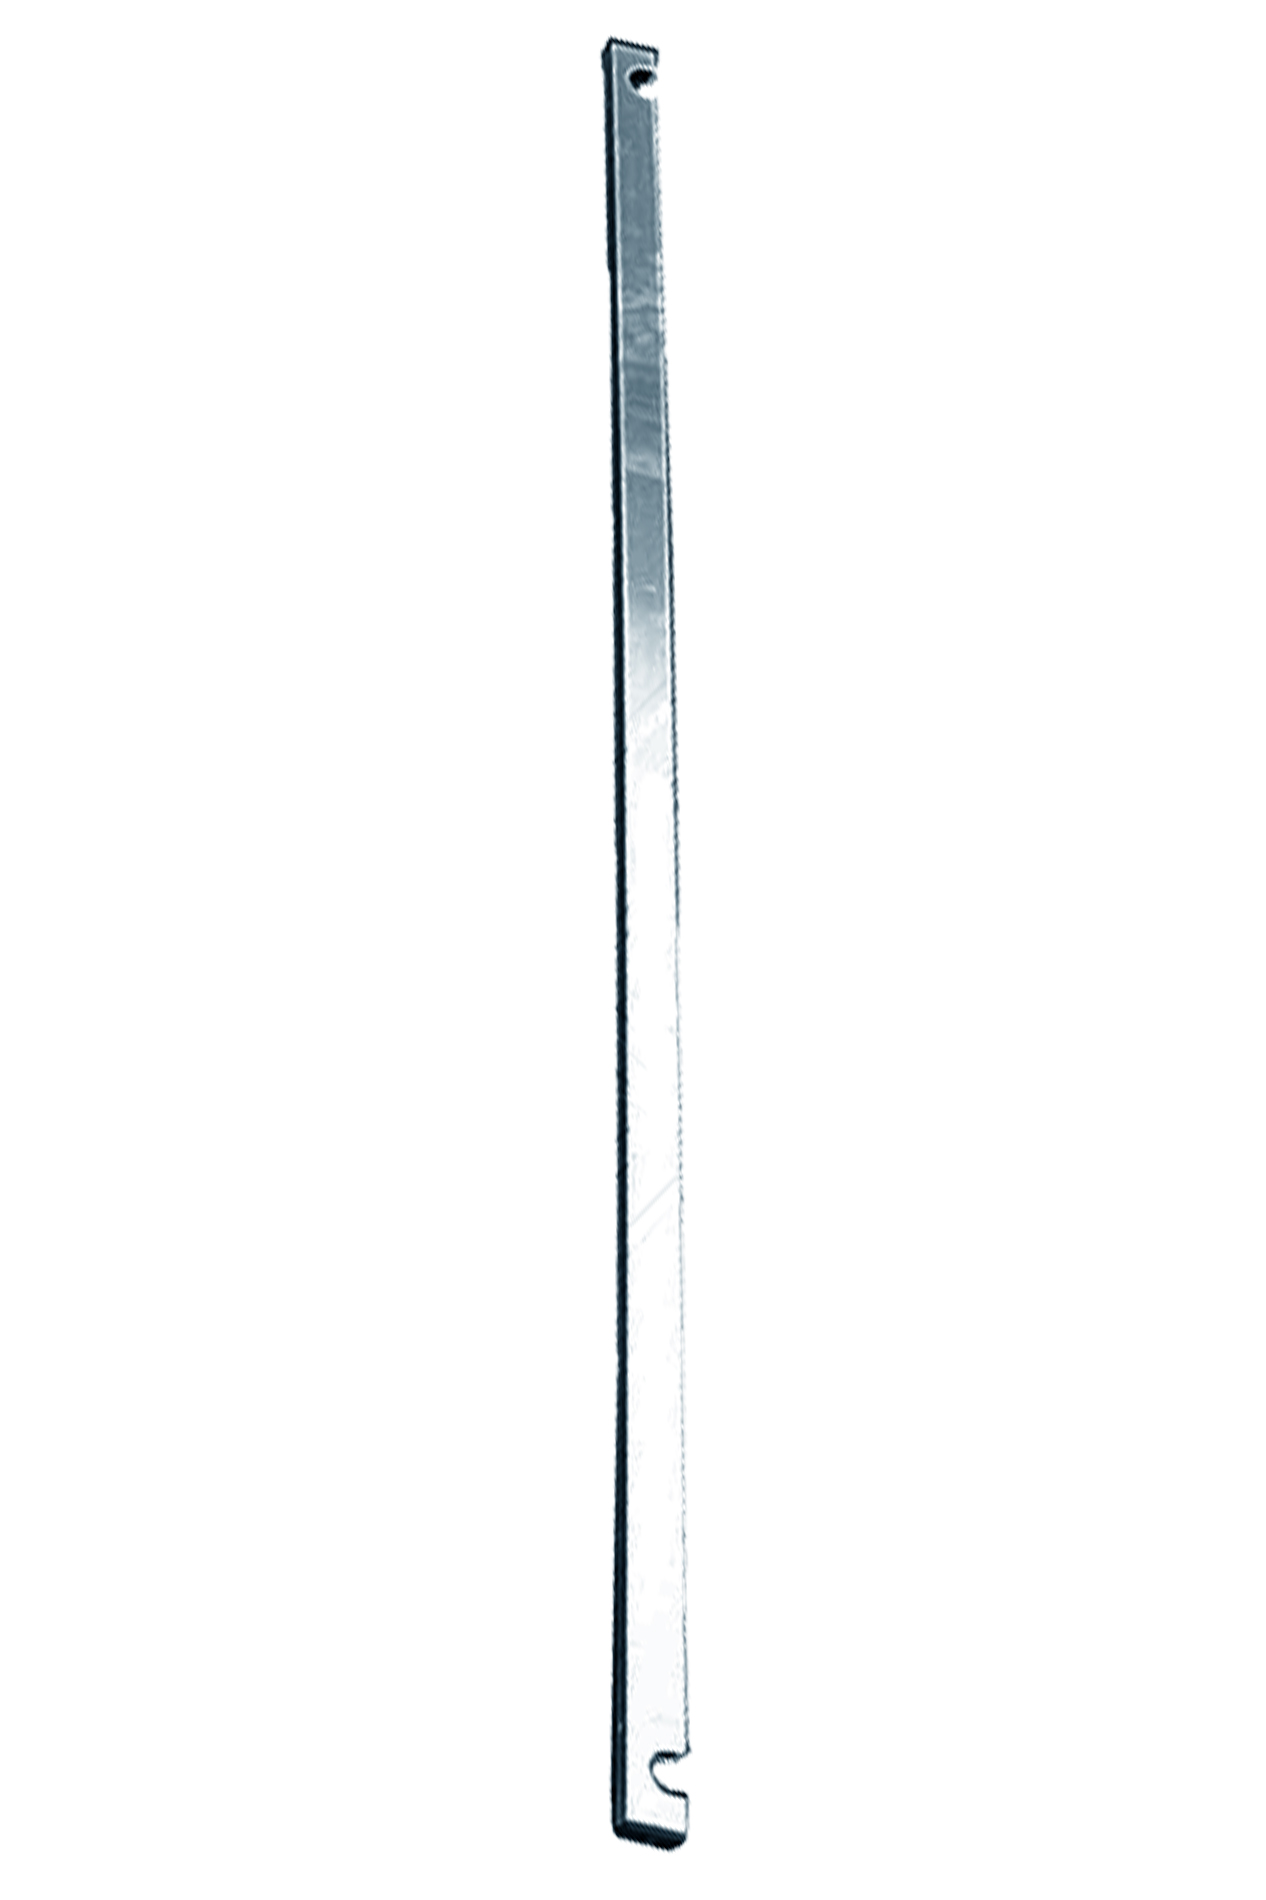 Дополнительное изображение Stabilo серии 1000 рабочая высота 5,2 м, размер площадки (2.5x0.75 м)